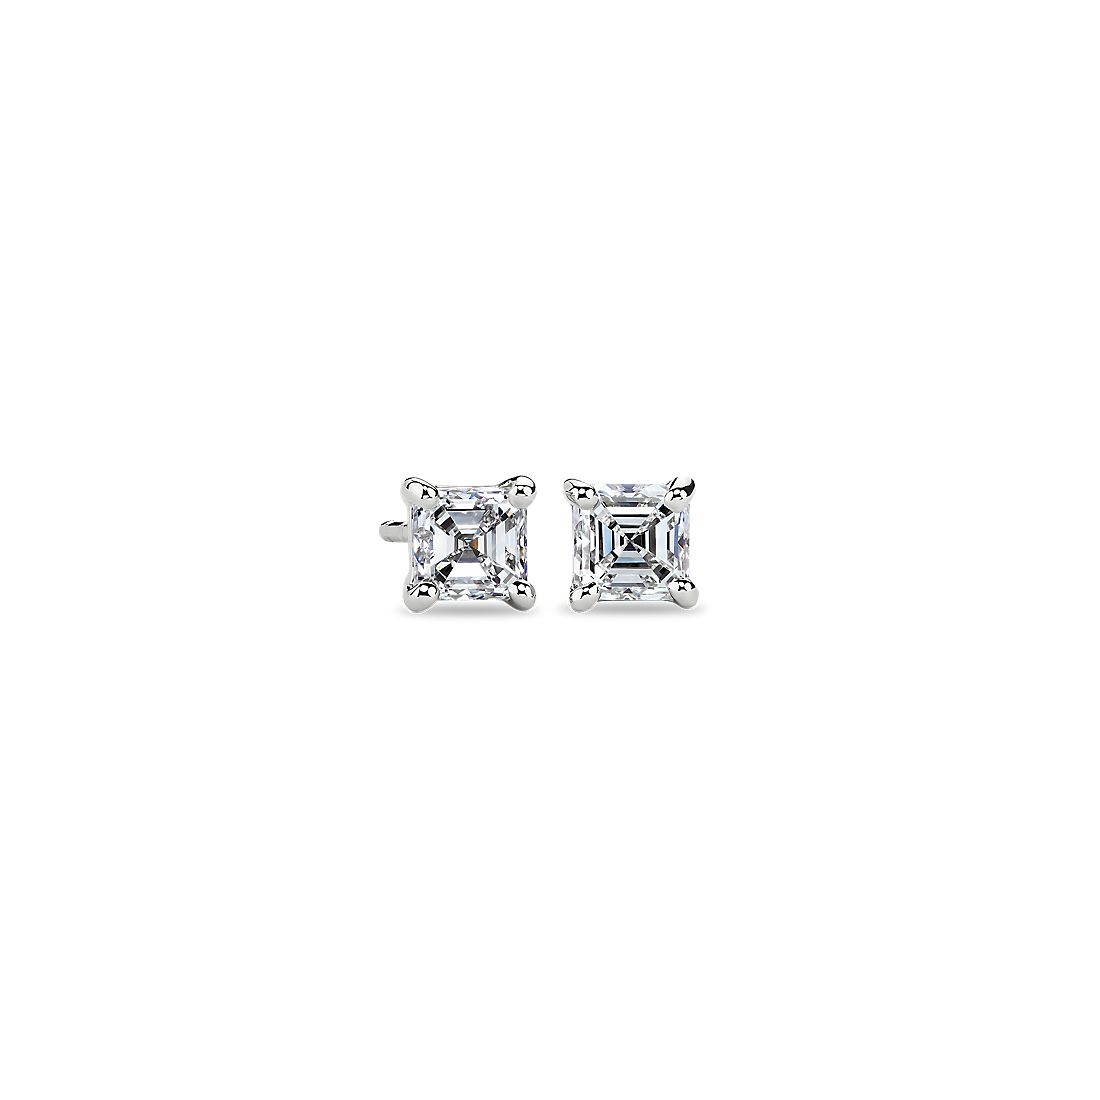 Asscher Diamond Stud Earrings in 14k White Gold (1 ct. tw.)